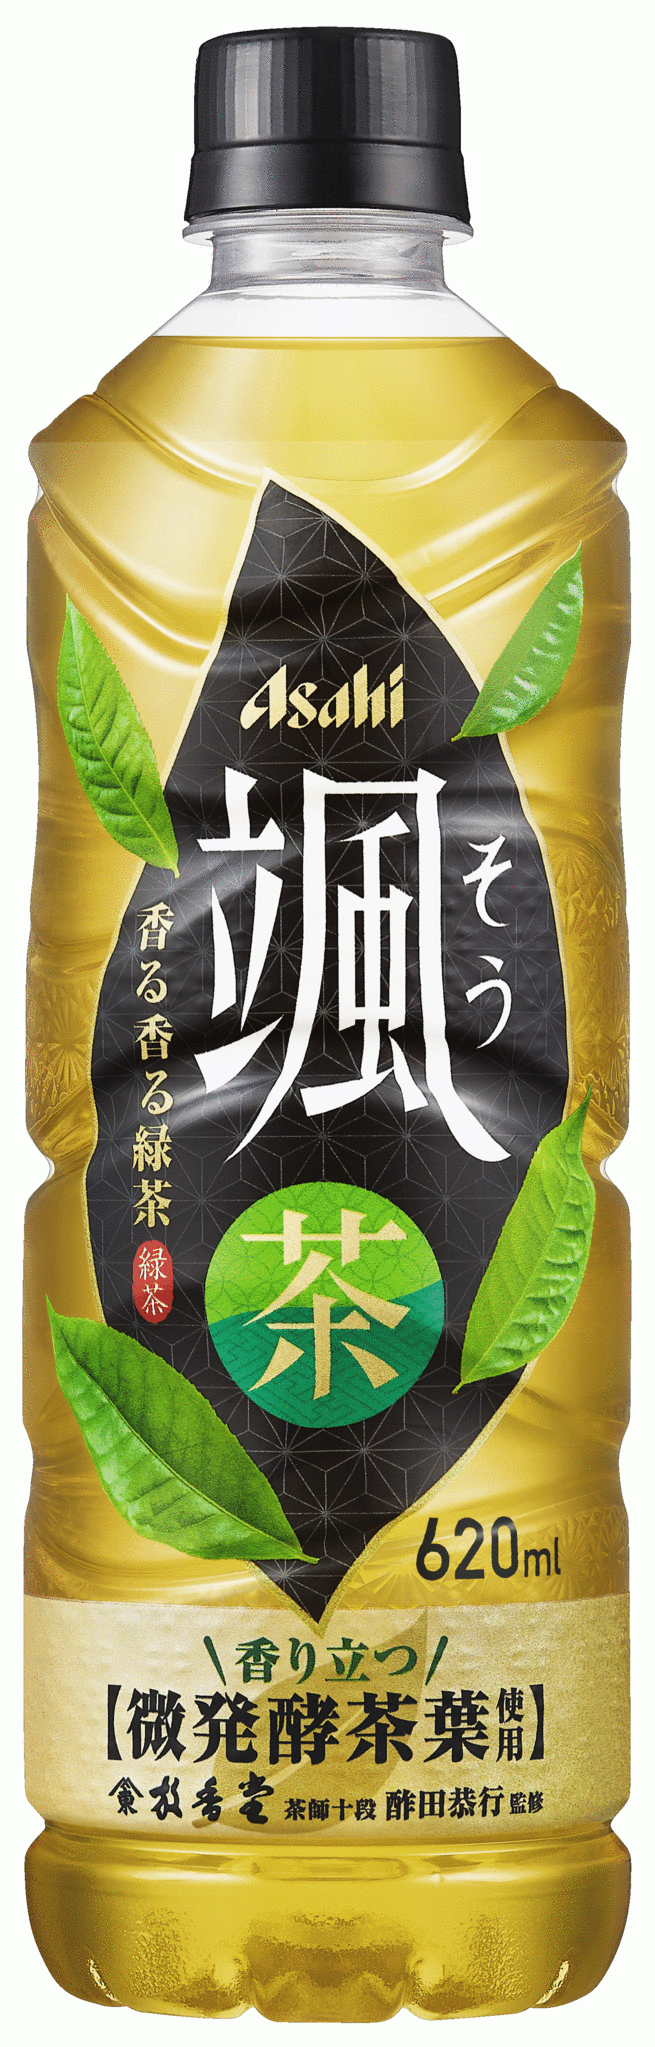 緑茶のニーズは「香り」へ新ブランド『アサヒ 颯(そう)』 4月4日発売